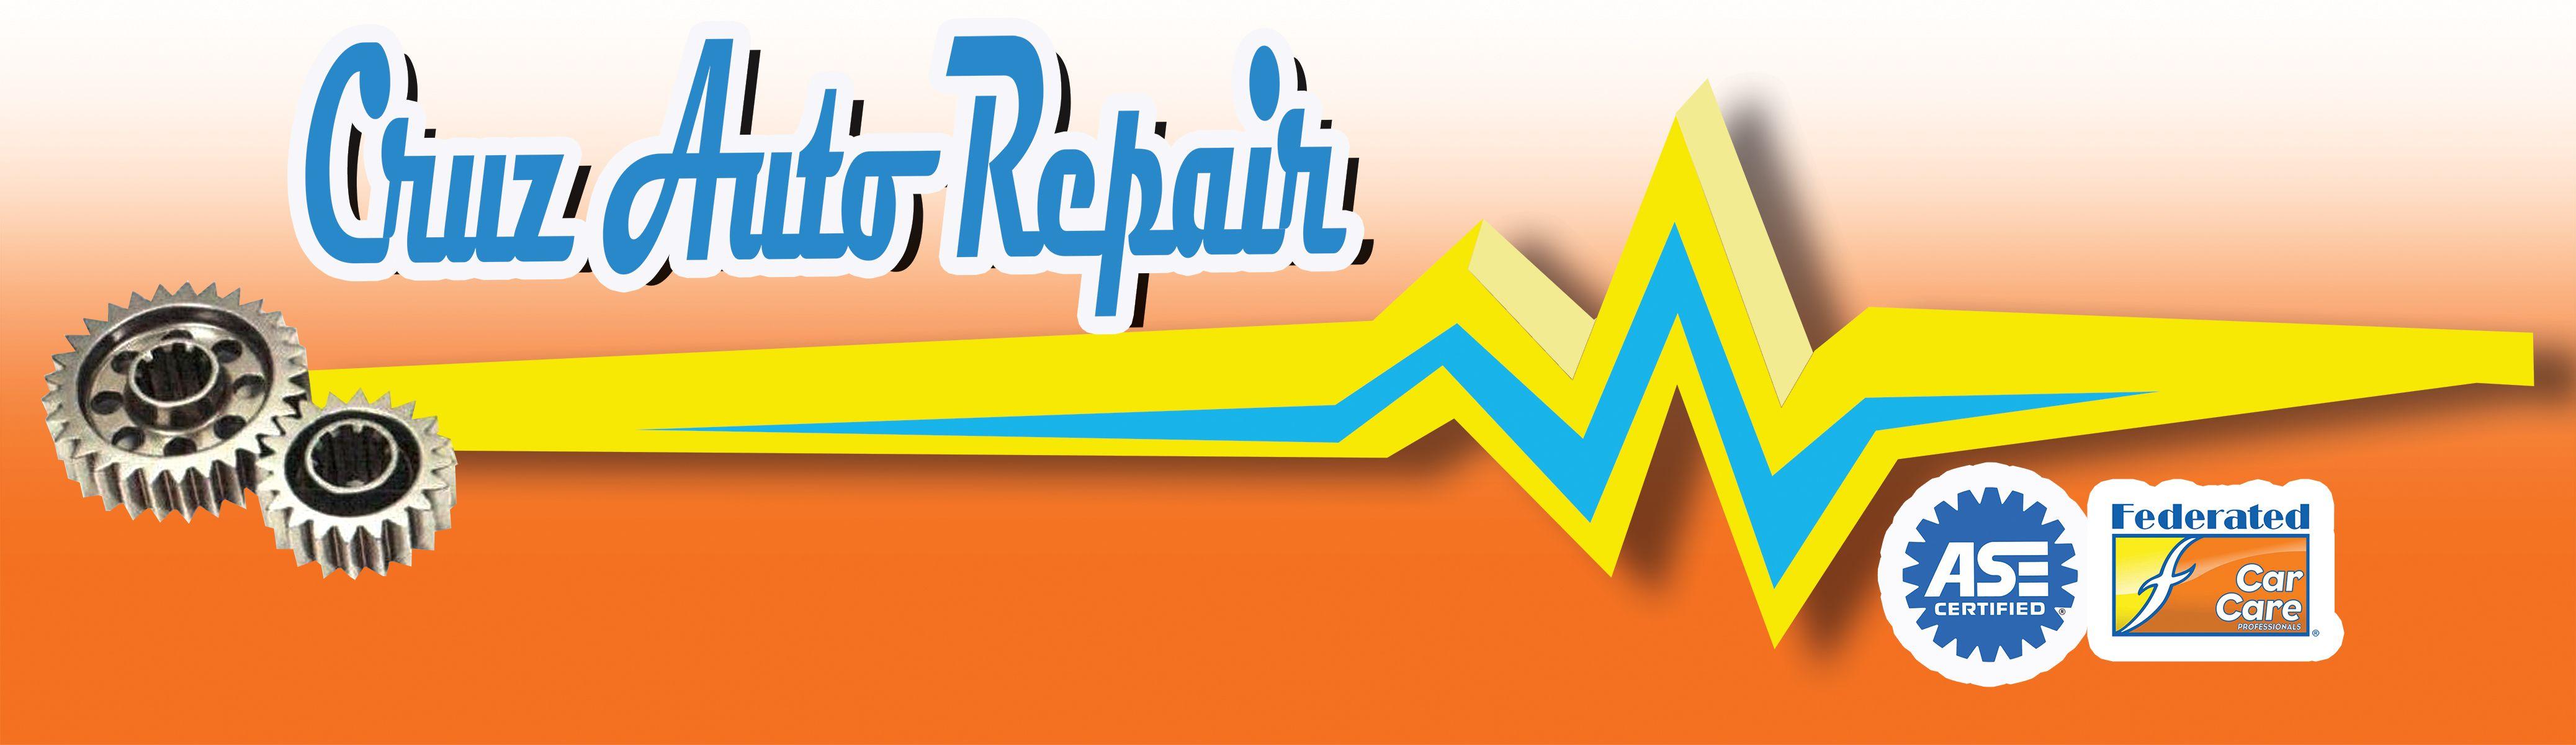 Certified Auto Repair Logo - Cruz Auto Repair logo rgb 2018 | Diamond Certified